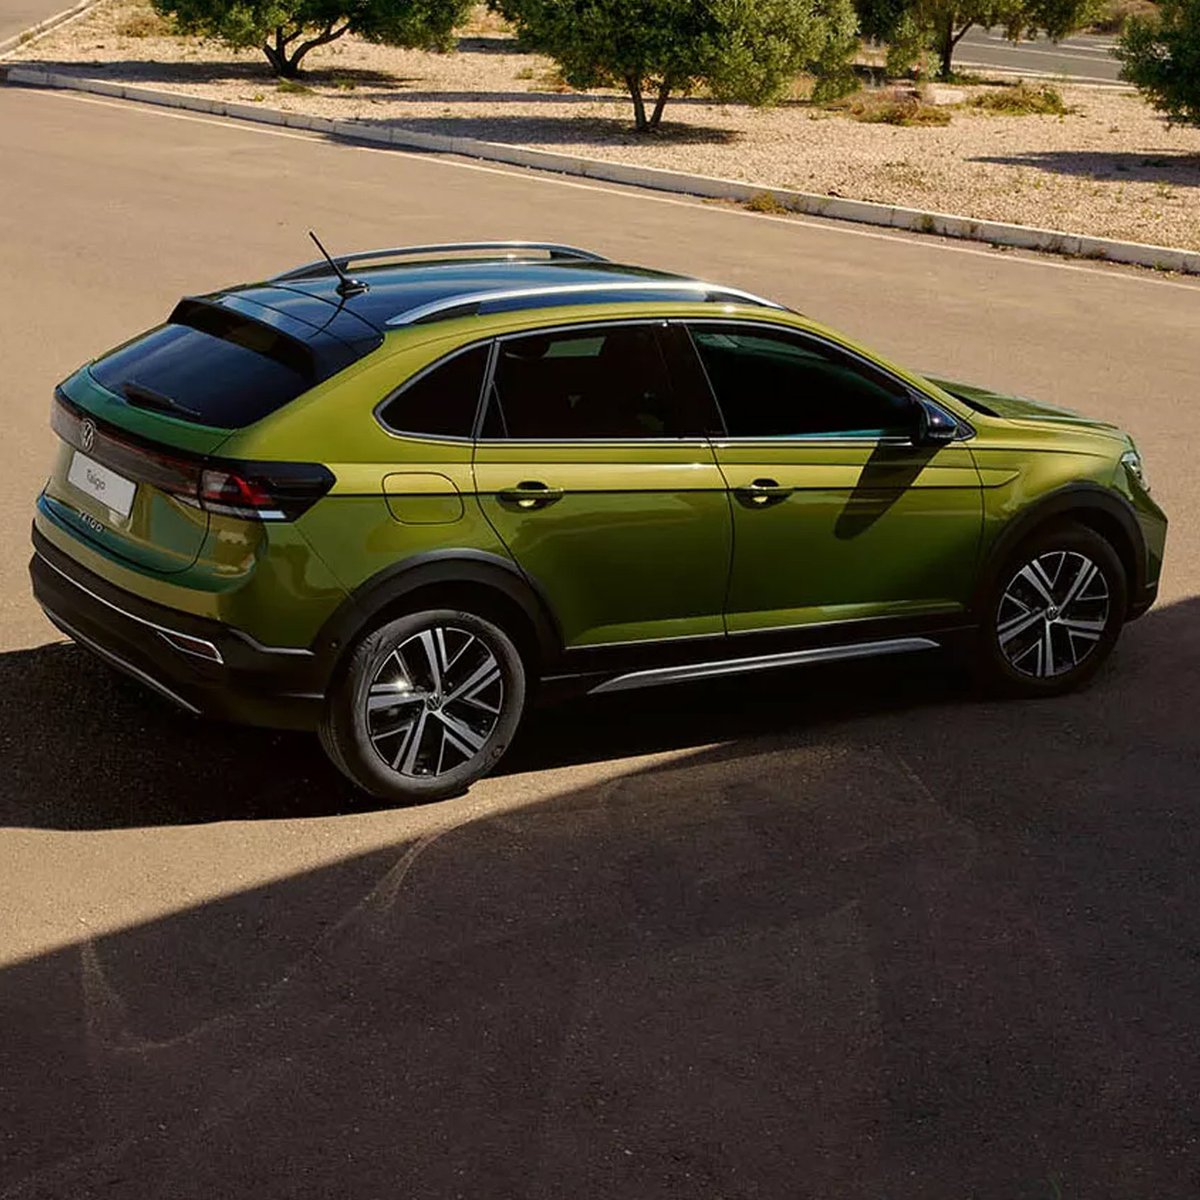 Green and bold.
New Taigo. Let's go.

#VolkswagenTaigo #VWTaigo #RSAvNZL